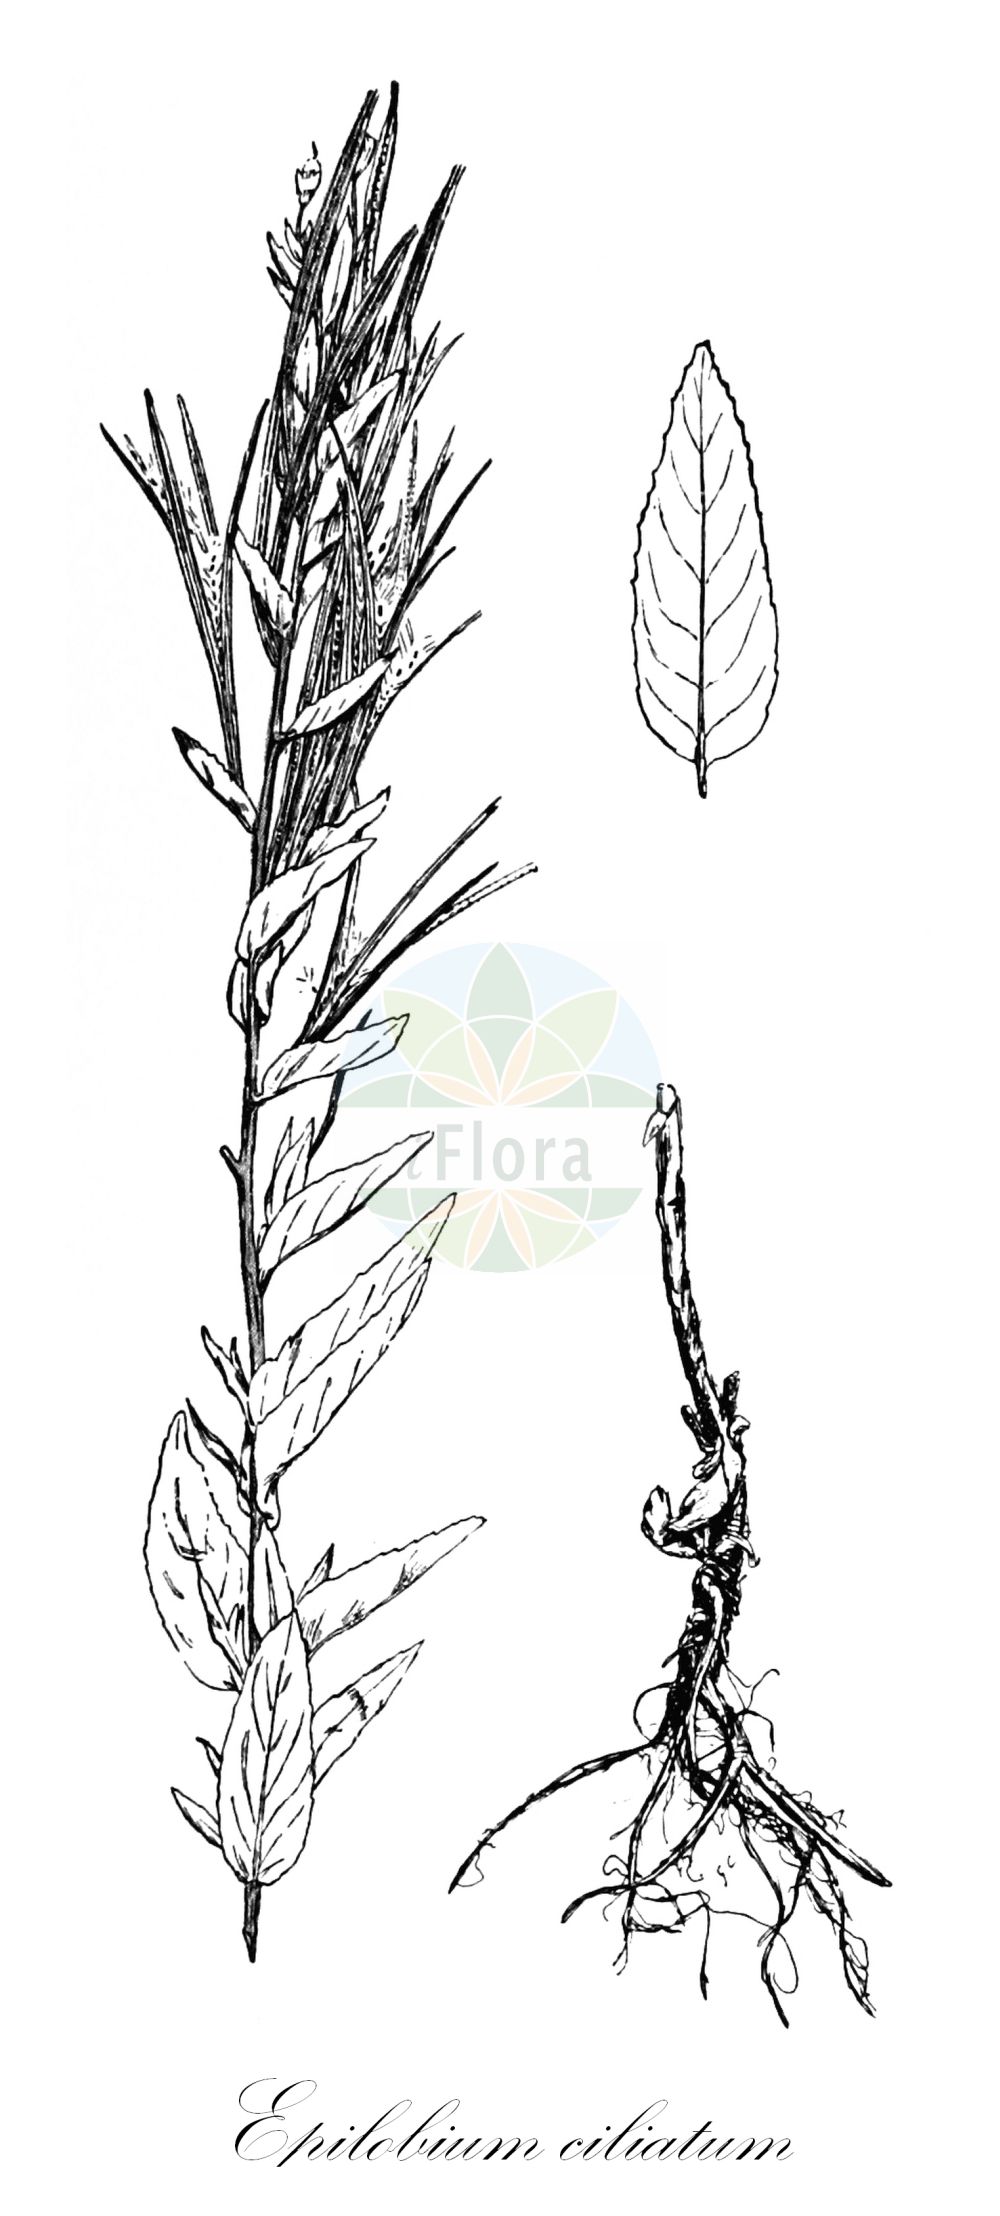 Historische Abbildung von Epilobium ciliatum (Drüsiges Weidenröschen - American Willowherb). Das Bild zeigt Blatt, Bluete, Frucht und Same. ---- Historical Drawing of Epilobium ciliatum (Drüsiges Weidenröschen - American Willowherb). The image is showing leaf, flower, fruit and seed.(Epilobium ciliatum,Drüsiges Weidenröschen,American Willowherb,Epilobium americanum,Epilobium ciliatum,Druesiges Weidenroeschen,Amerikanisches Weidenroeschen,Druesen-Weidenroeschen,American Willowherb,Fringed Willowherb,Epilobium,Weidenröschen,Willowherb,Onagraceae,Nachtkerzengewächse,Evening Primrose family,Blatt,Bluete,Frucht,Same,leaf,flower,fruit,seed,Léveillé (1911))